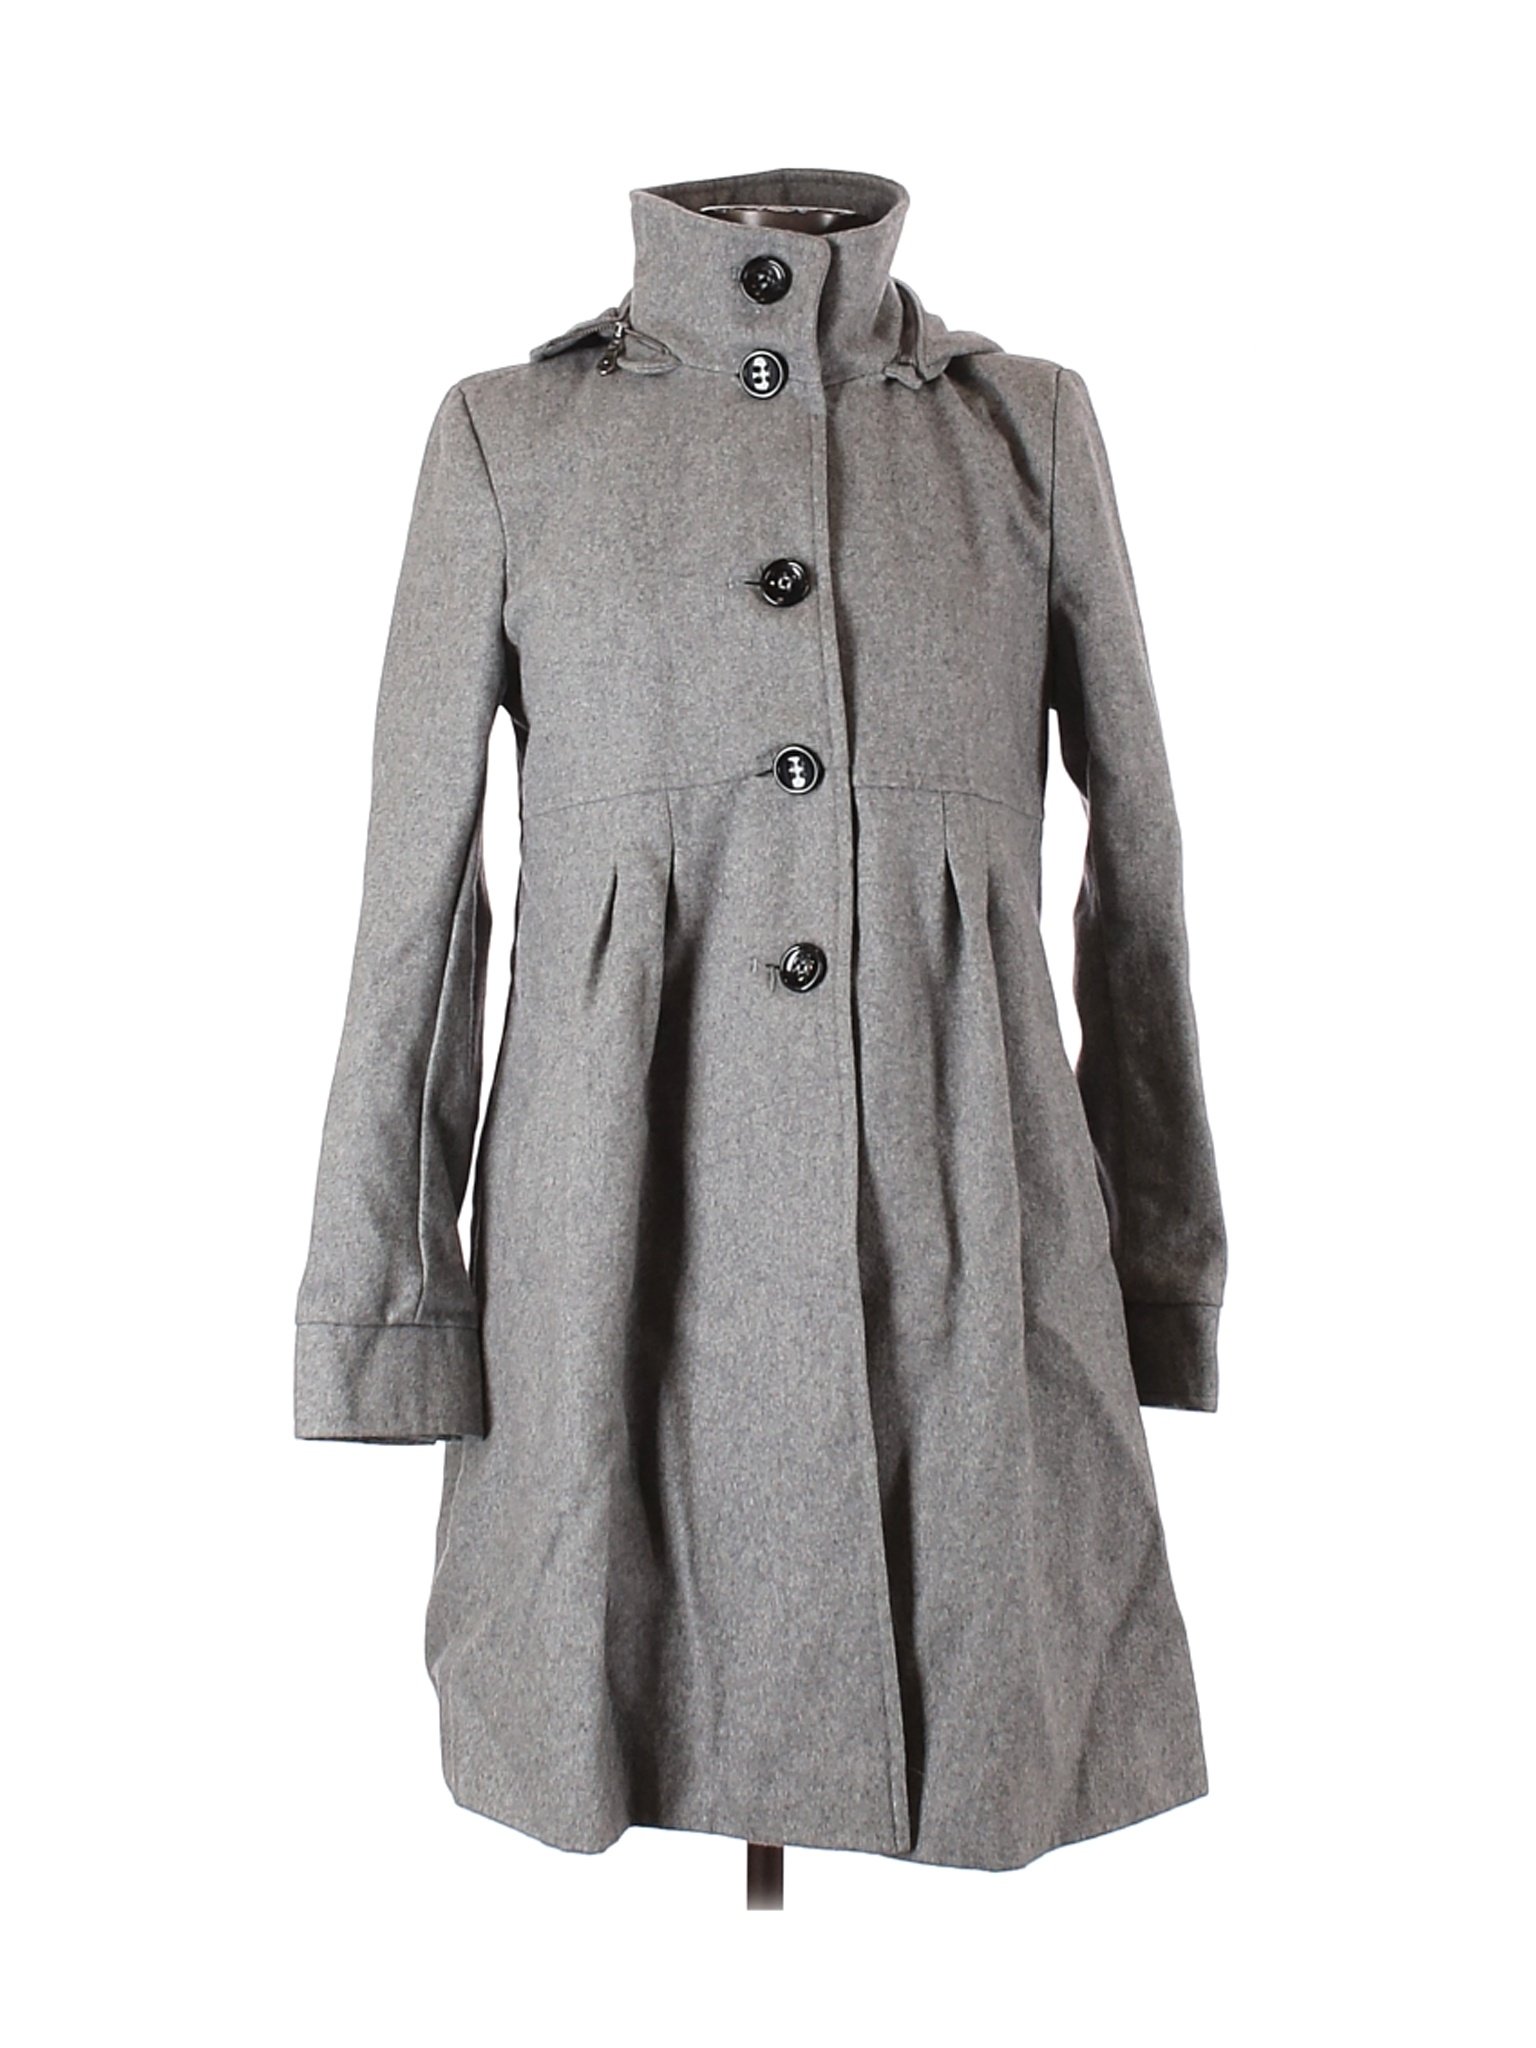 DKNY Women Gray Wool Coat 6 | eBay